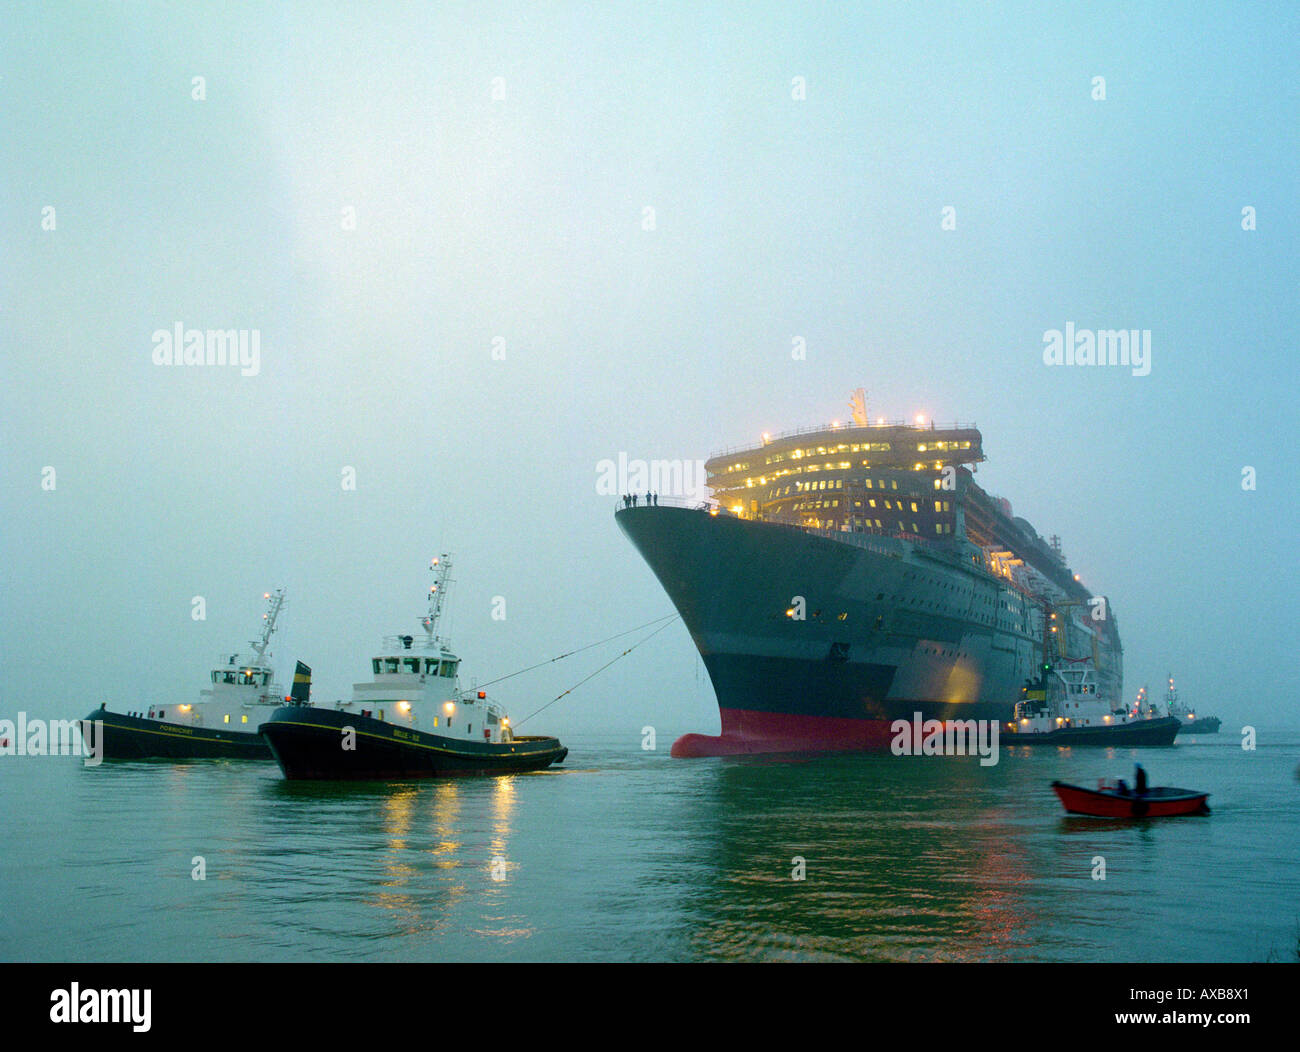 Les remorqueurs tirant sur le navire de croisière Queen Mary 2 à l'aube, Saint-Nazaire, France Banque D'Images